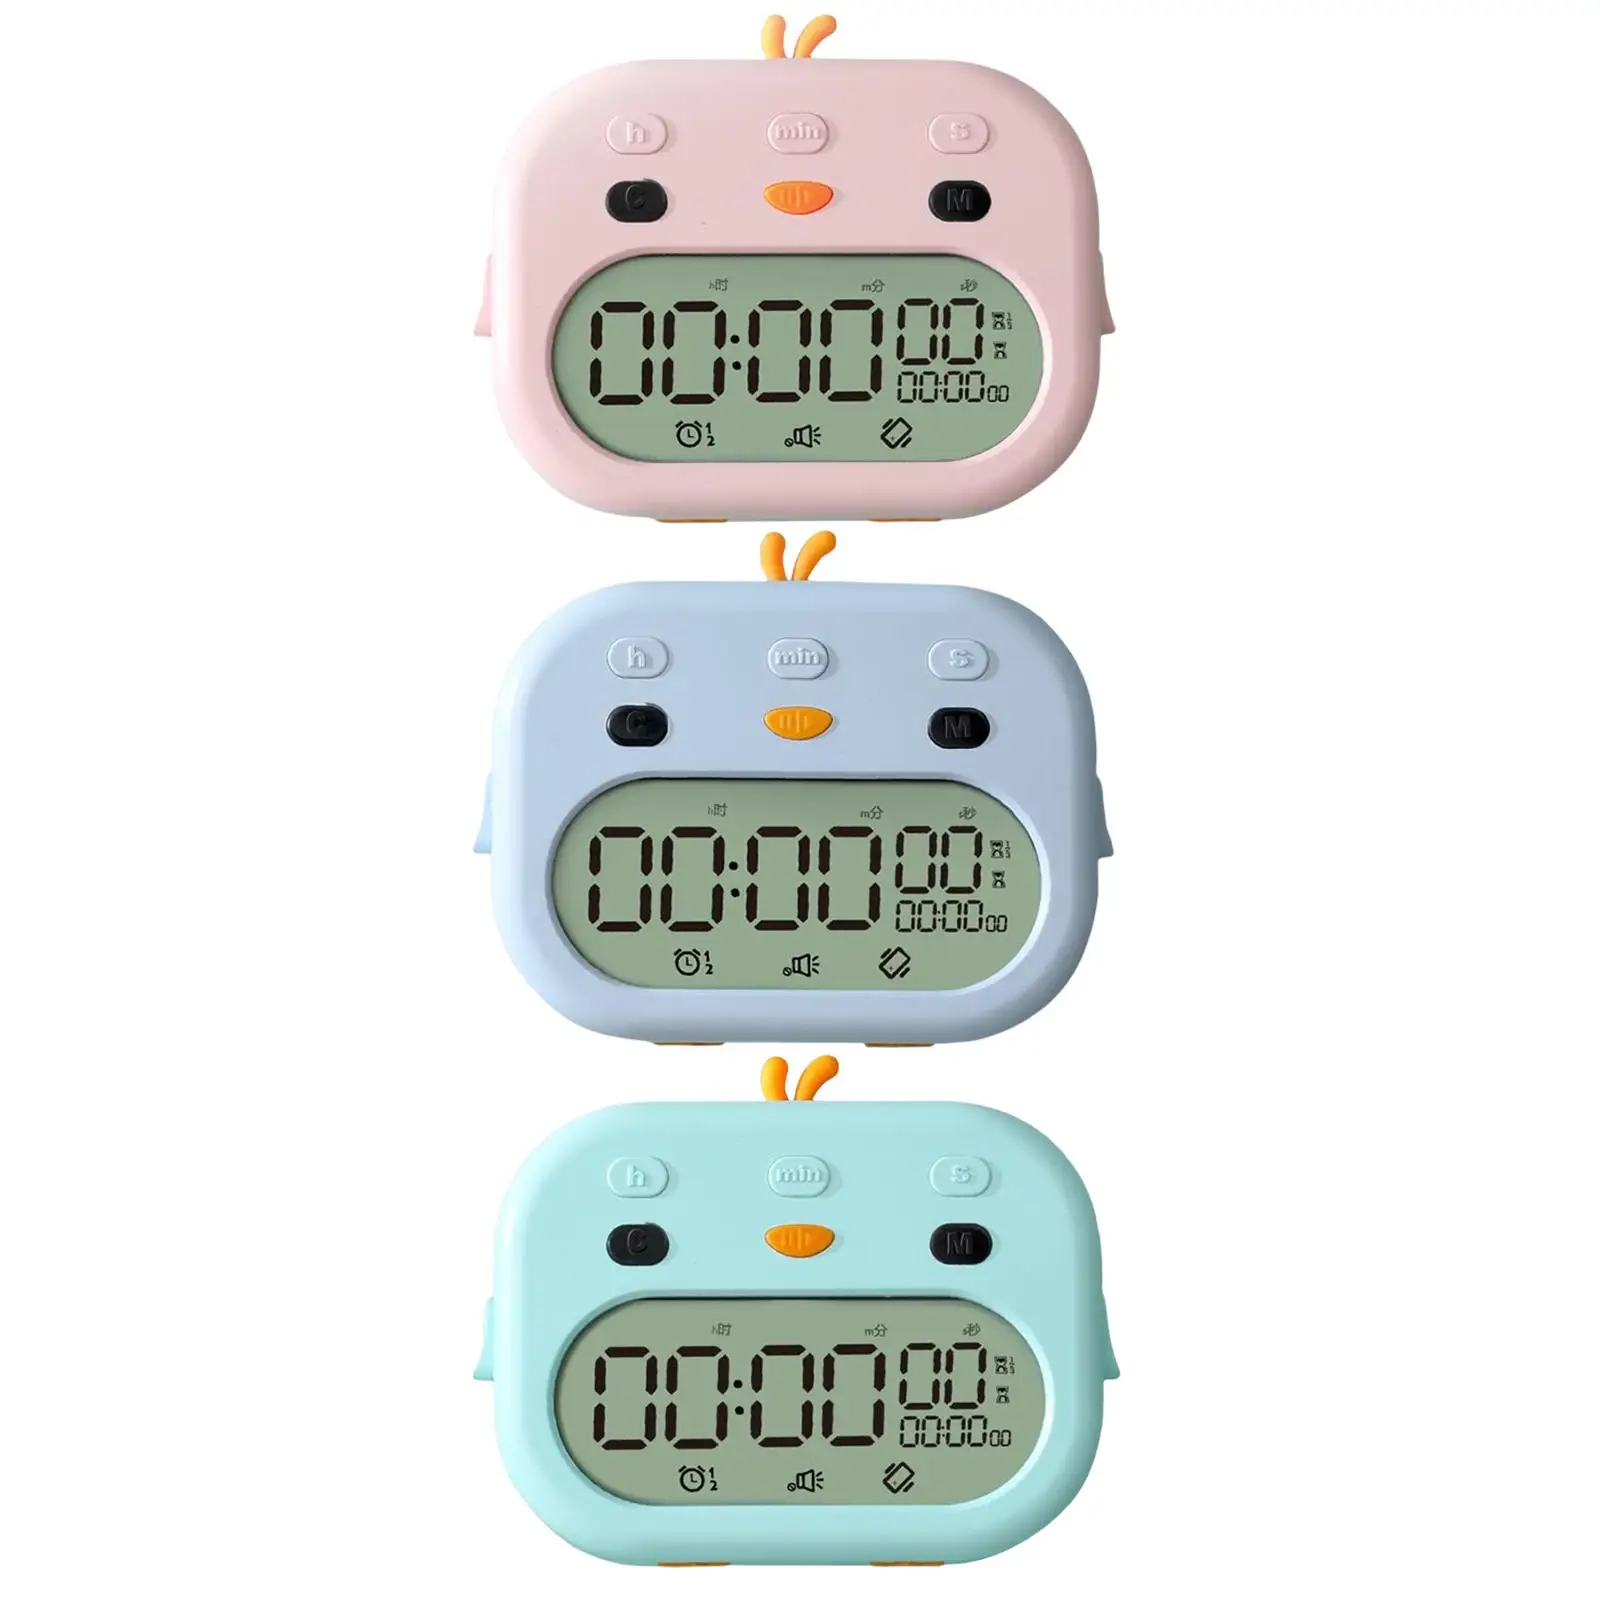 Digital Timer Clock Dual Alarm Time Management LED Display Adjustable Loud Alarm Low Energy for Cooking Bedside Table Homework